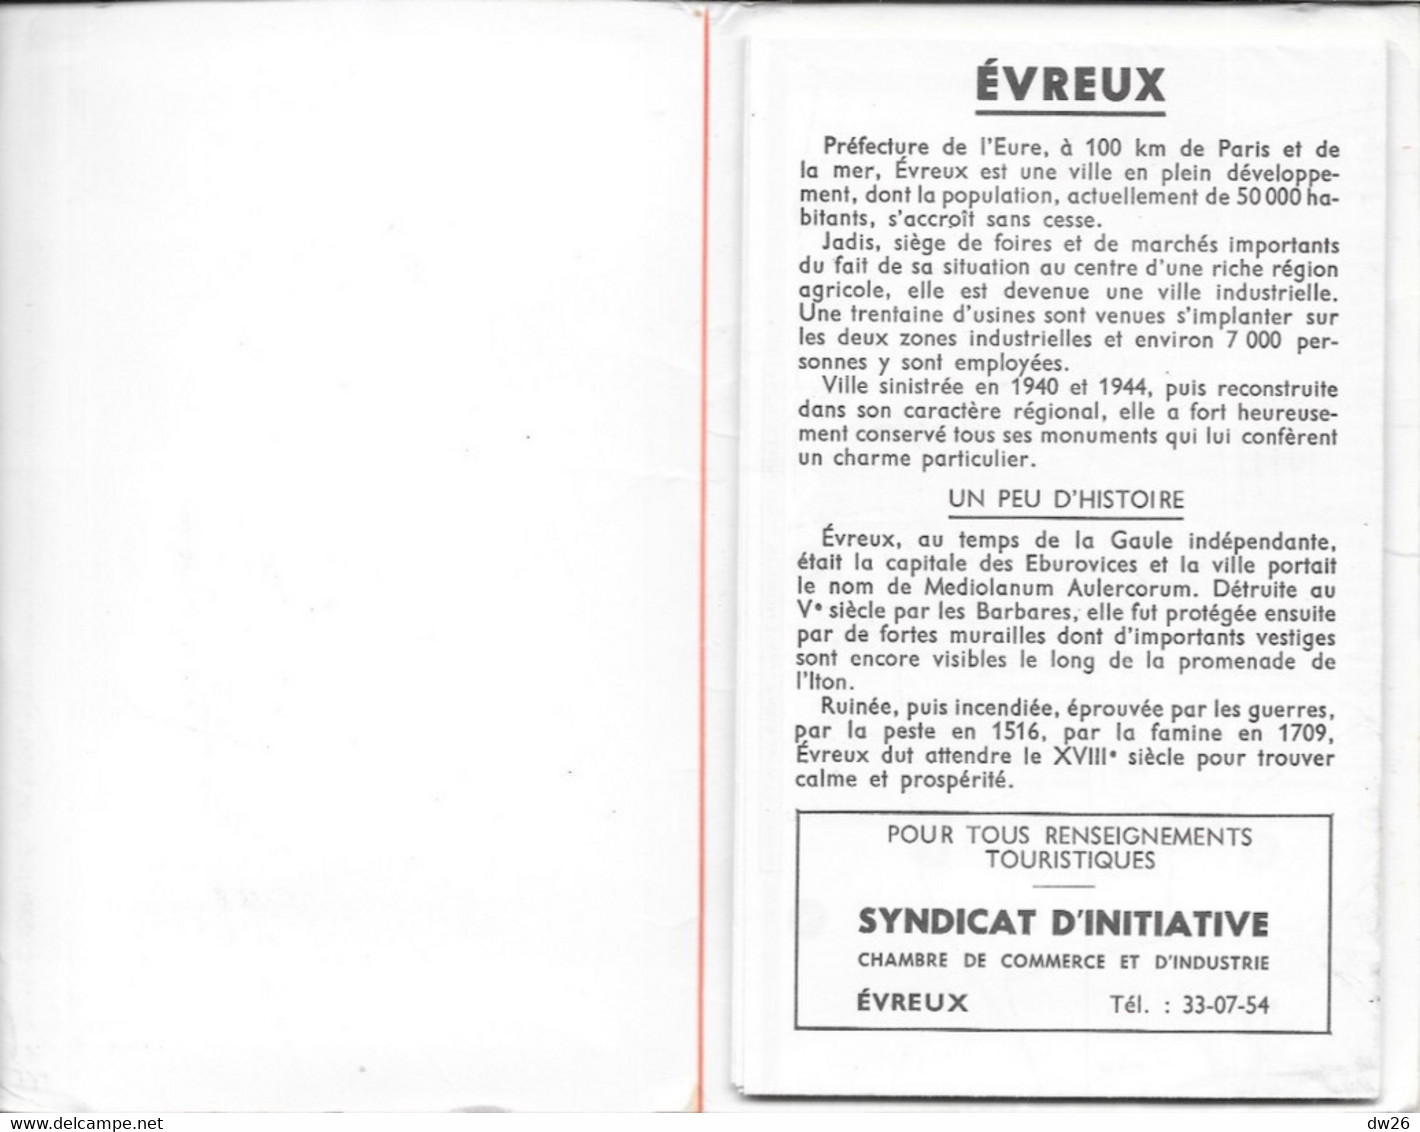 Plan Guide Blay: Evreux (Eure), Renseignements Divers, Répertoire Des Rues - Altri & Non Classificati